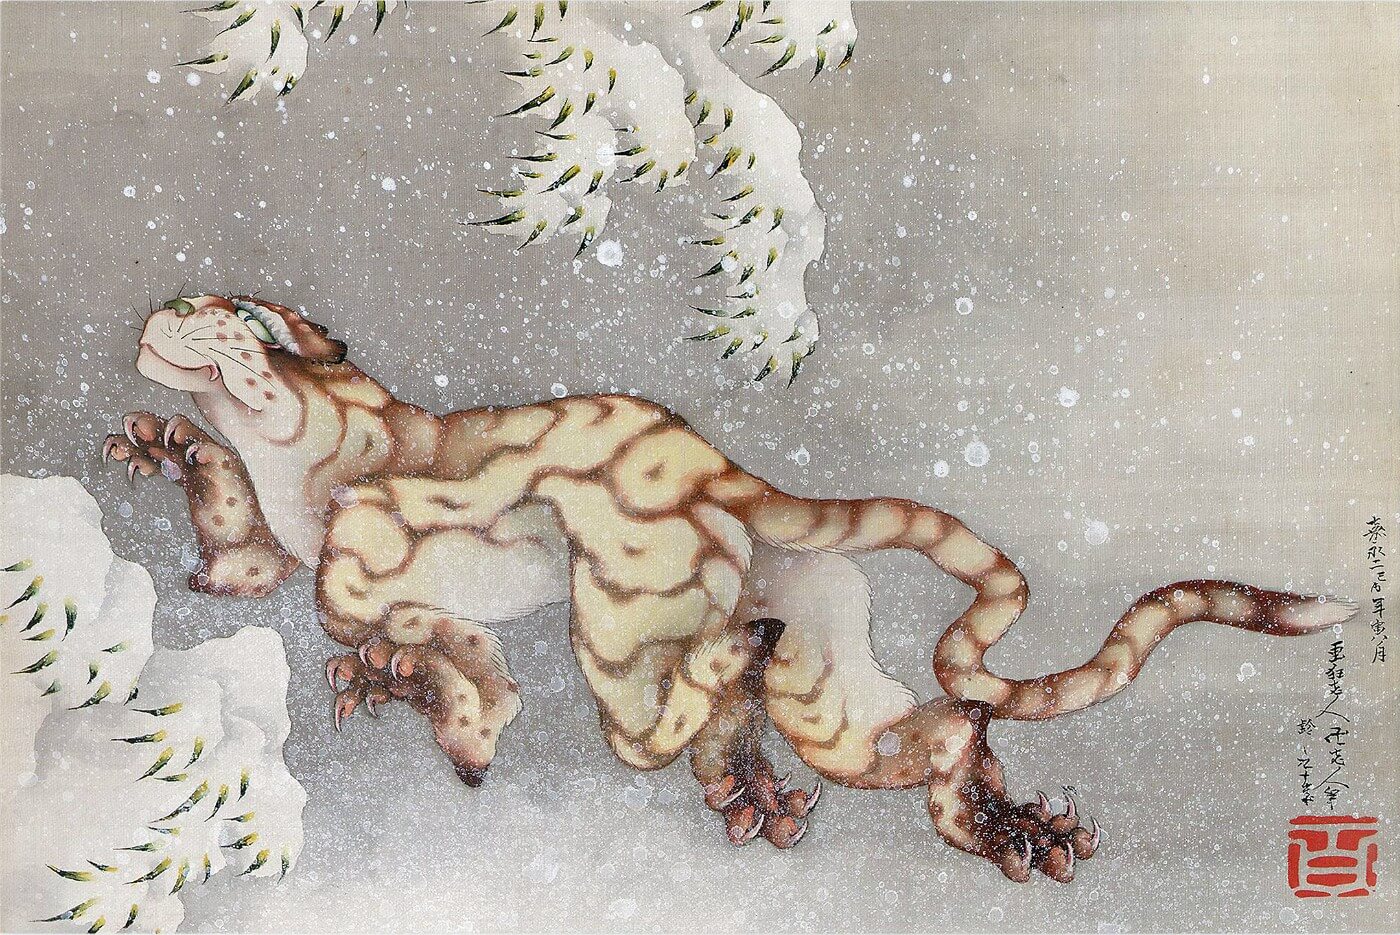 TIGER IN A SNOWSTORM Painting - Meri Deewar - MeriDeewar